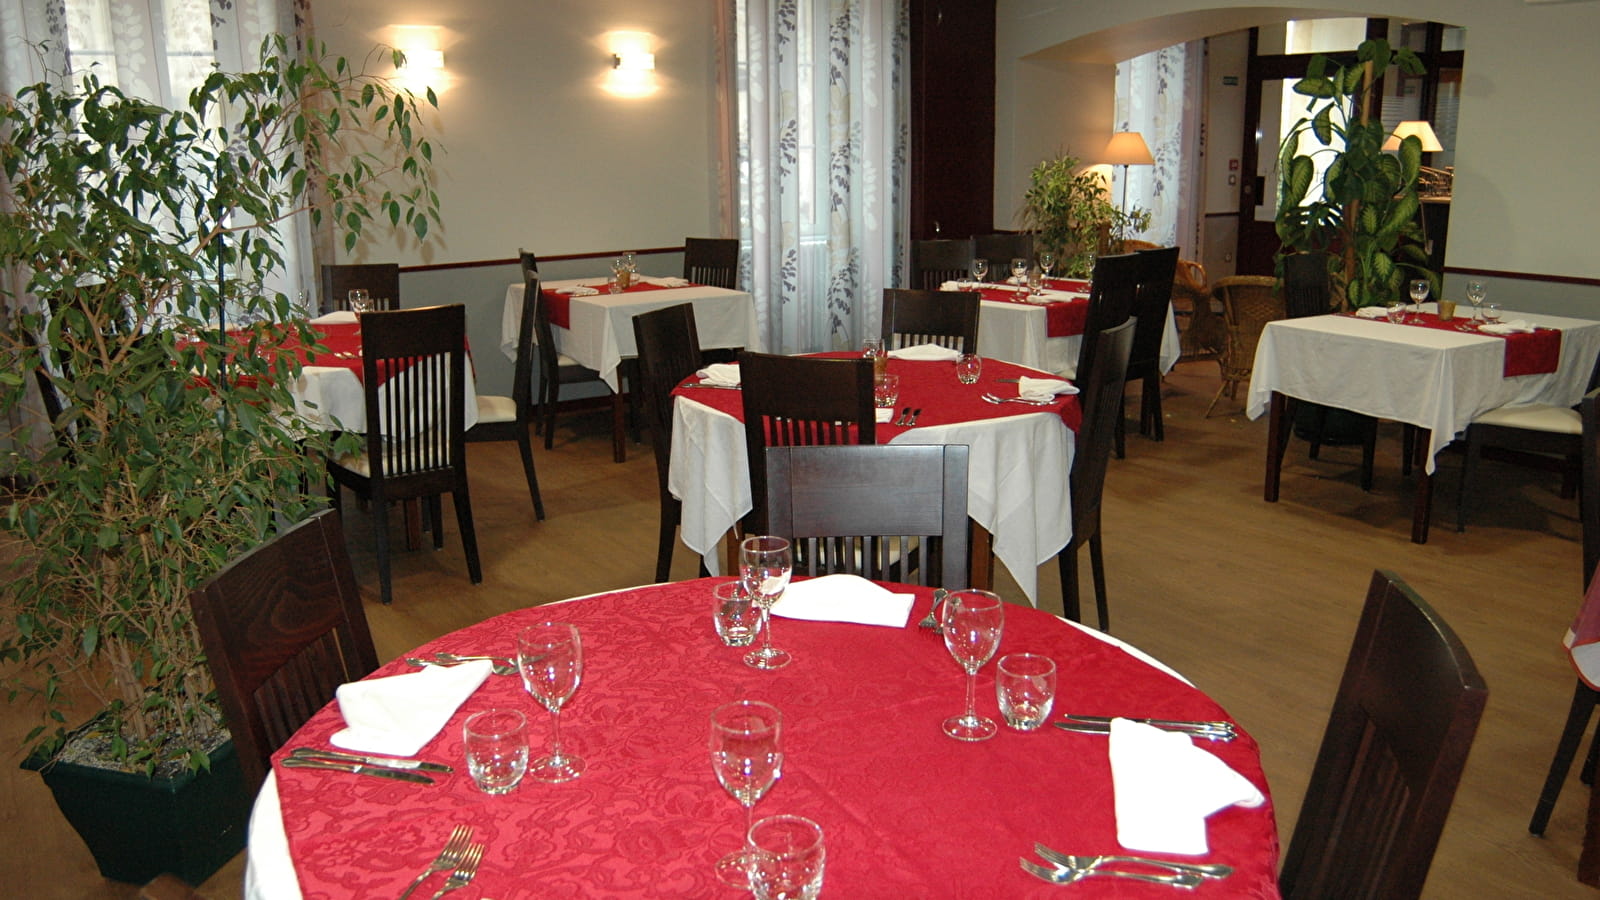 hotel Restaurant de Bourgogne